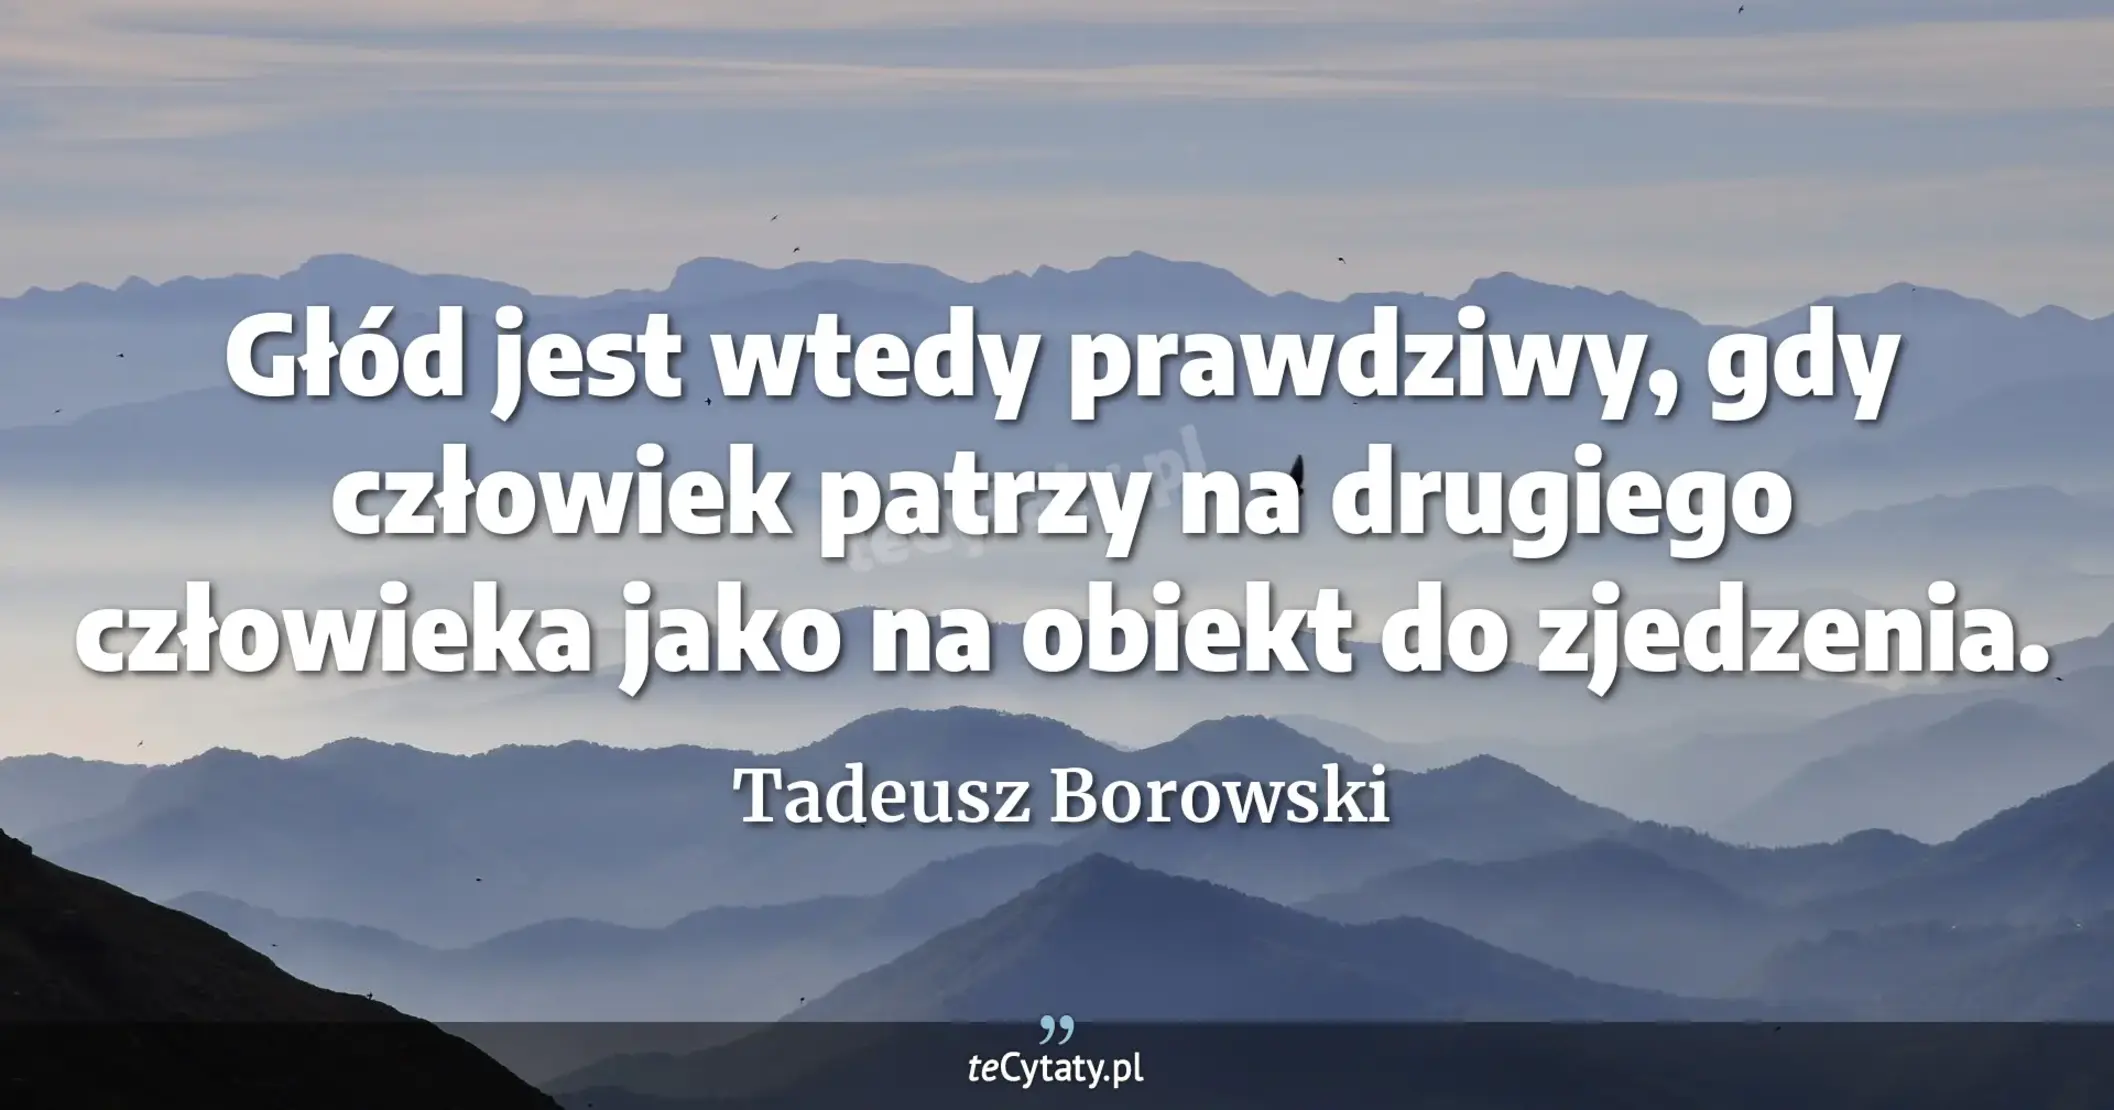 Głód jest wtedy prawdziwy, gdy człowiek patrzy na drugiego człowieka jako na obiekt do zjedzenia. - Tadeusz Borowski